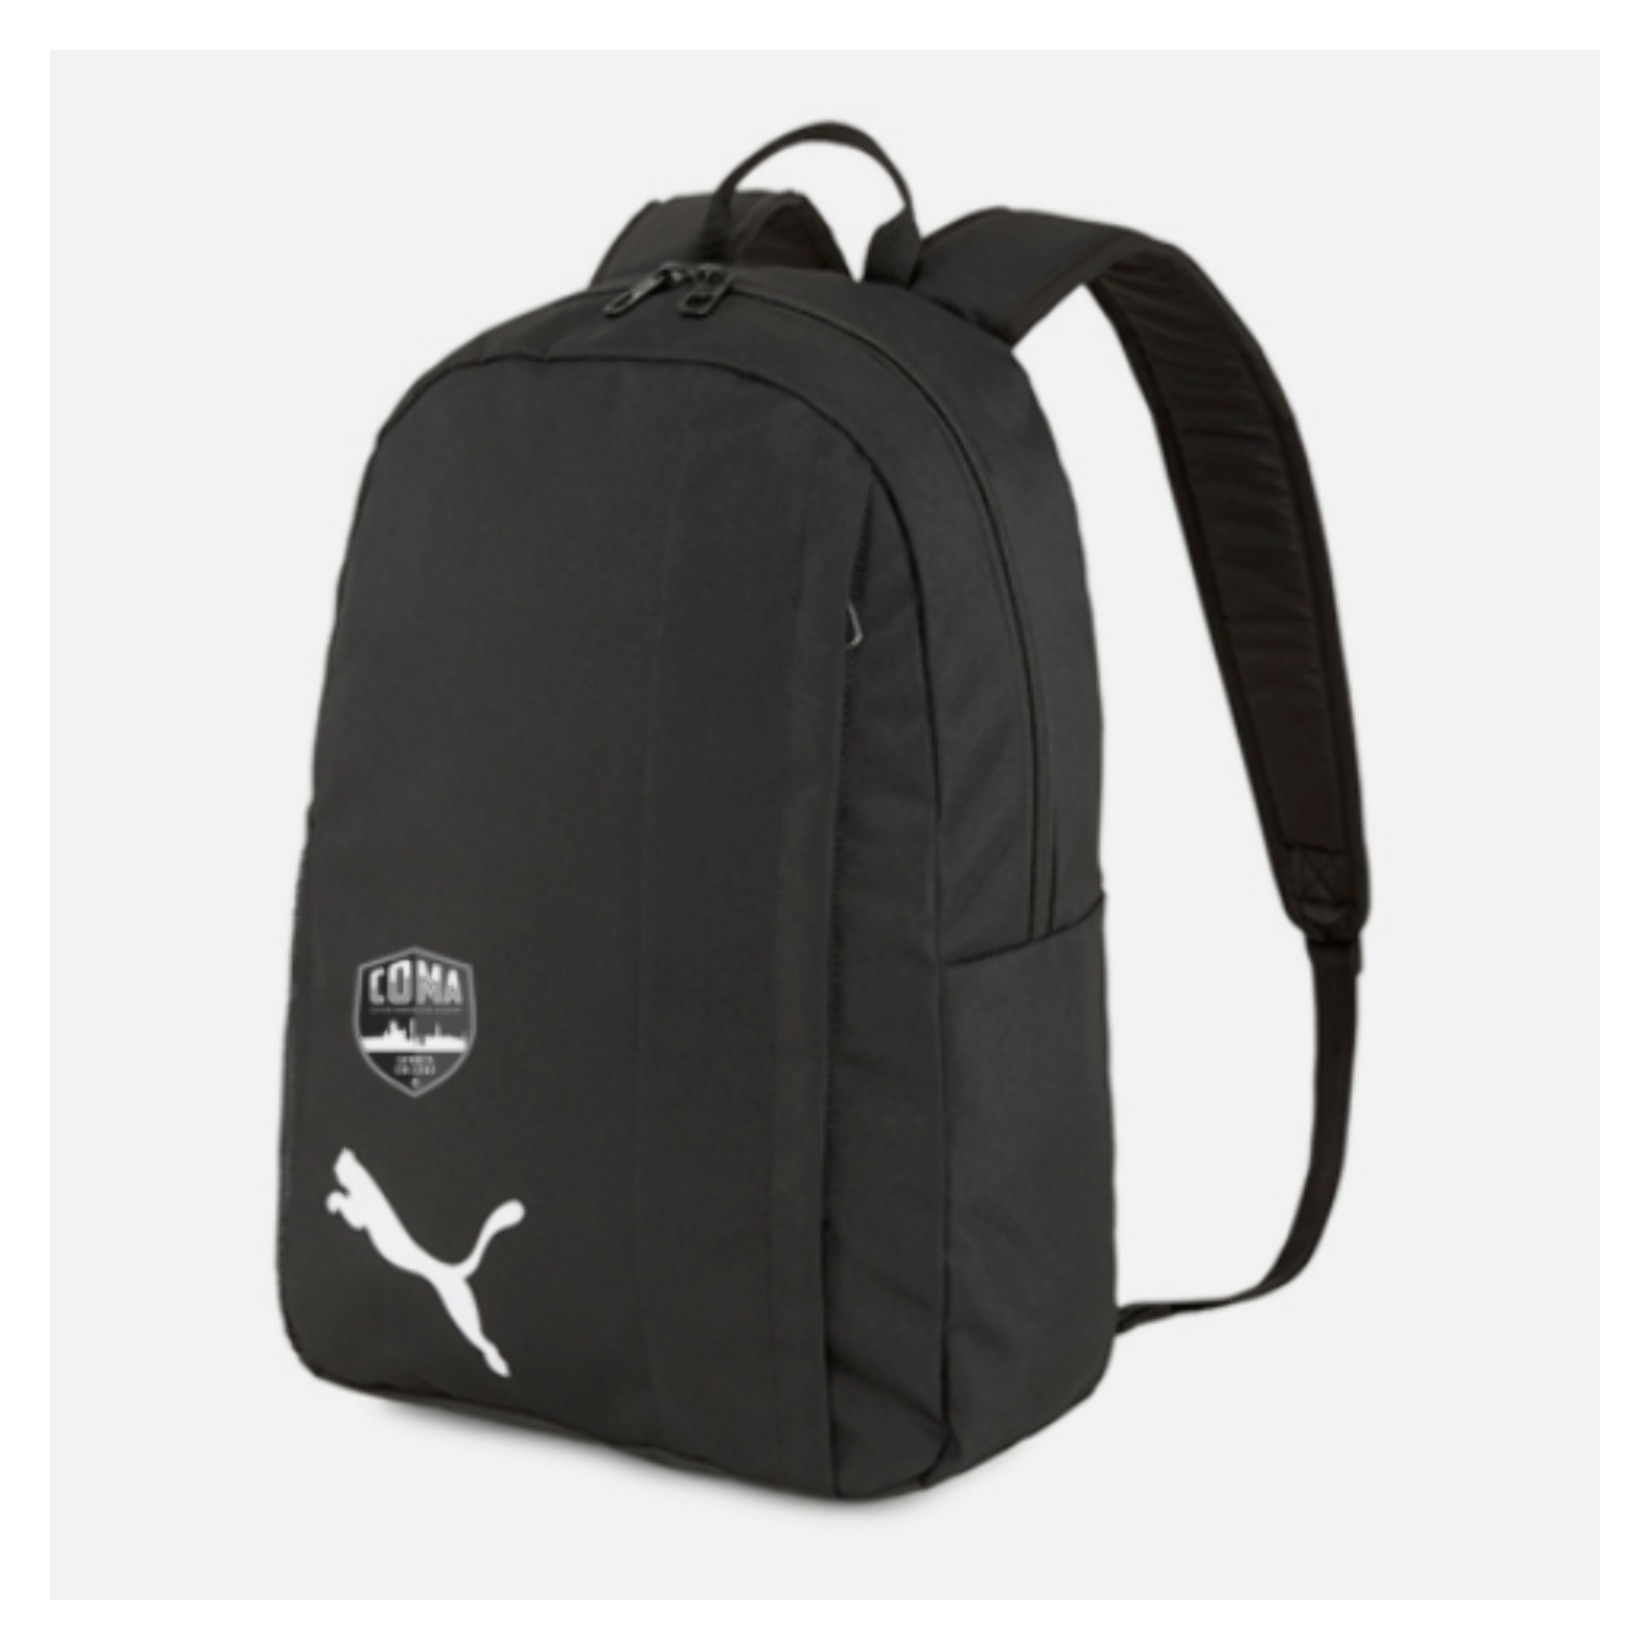 Puma Goal Backpack